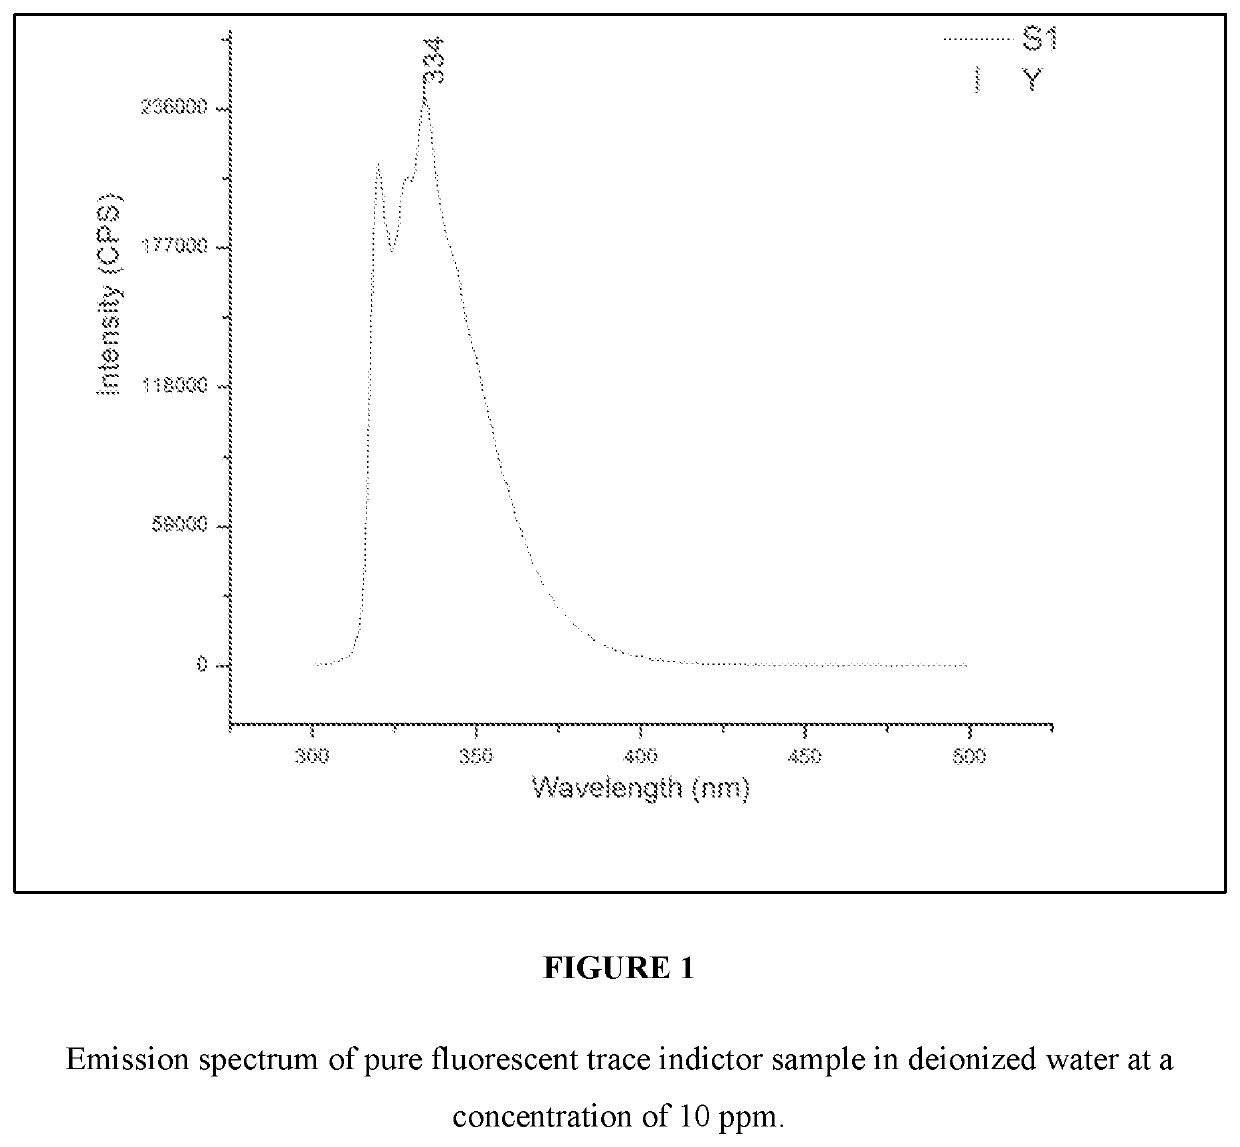 Quantitative detection of non-fluorine Anti-soil using a fluorescent trace indicator